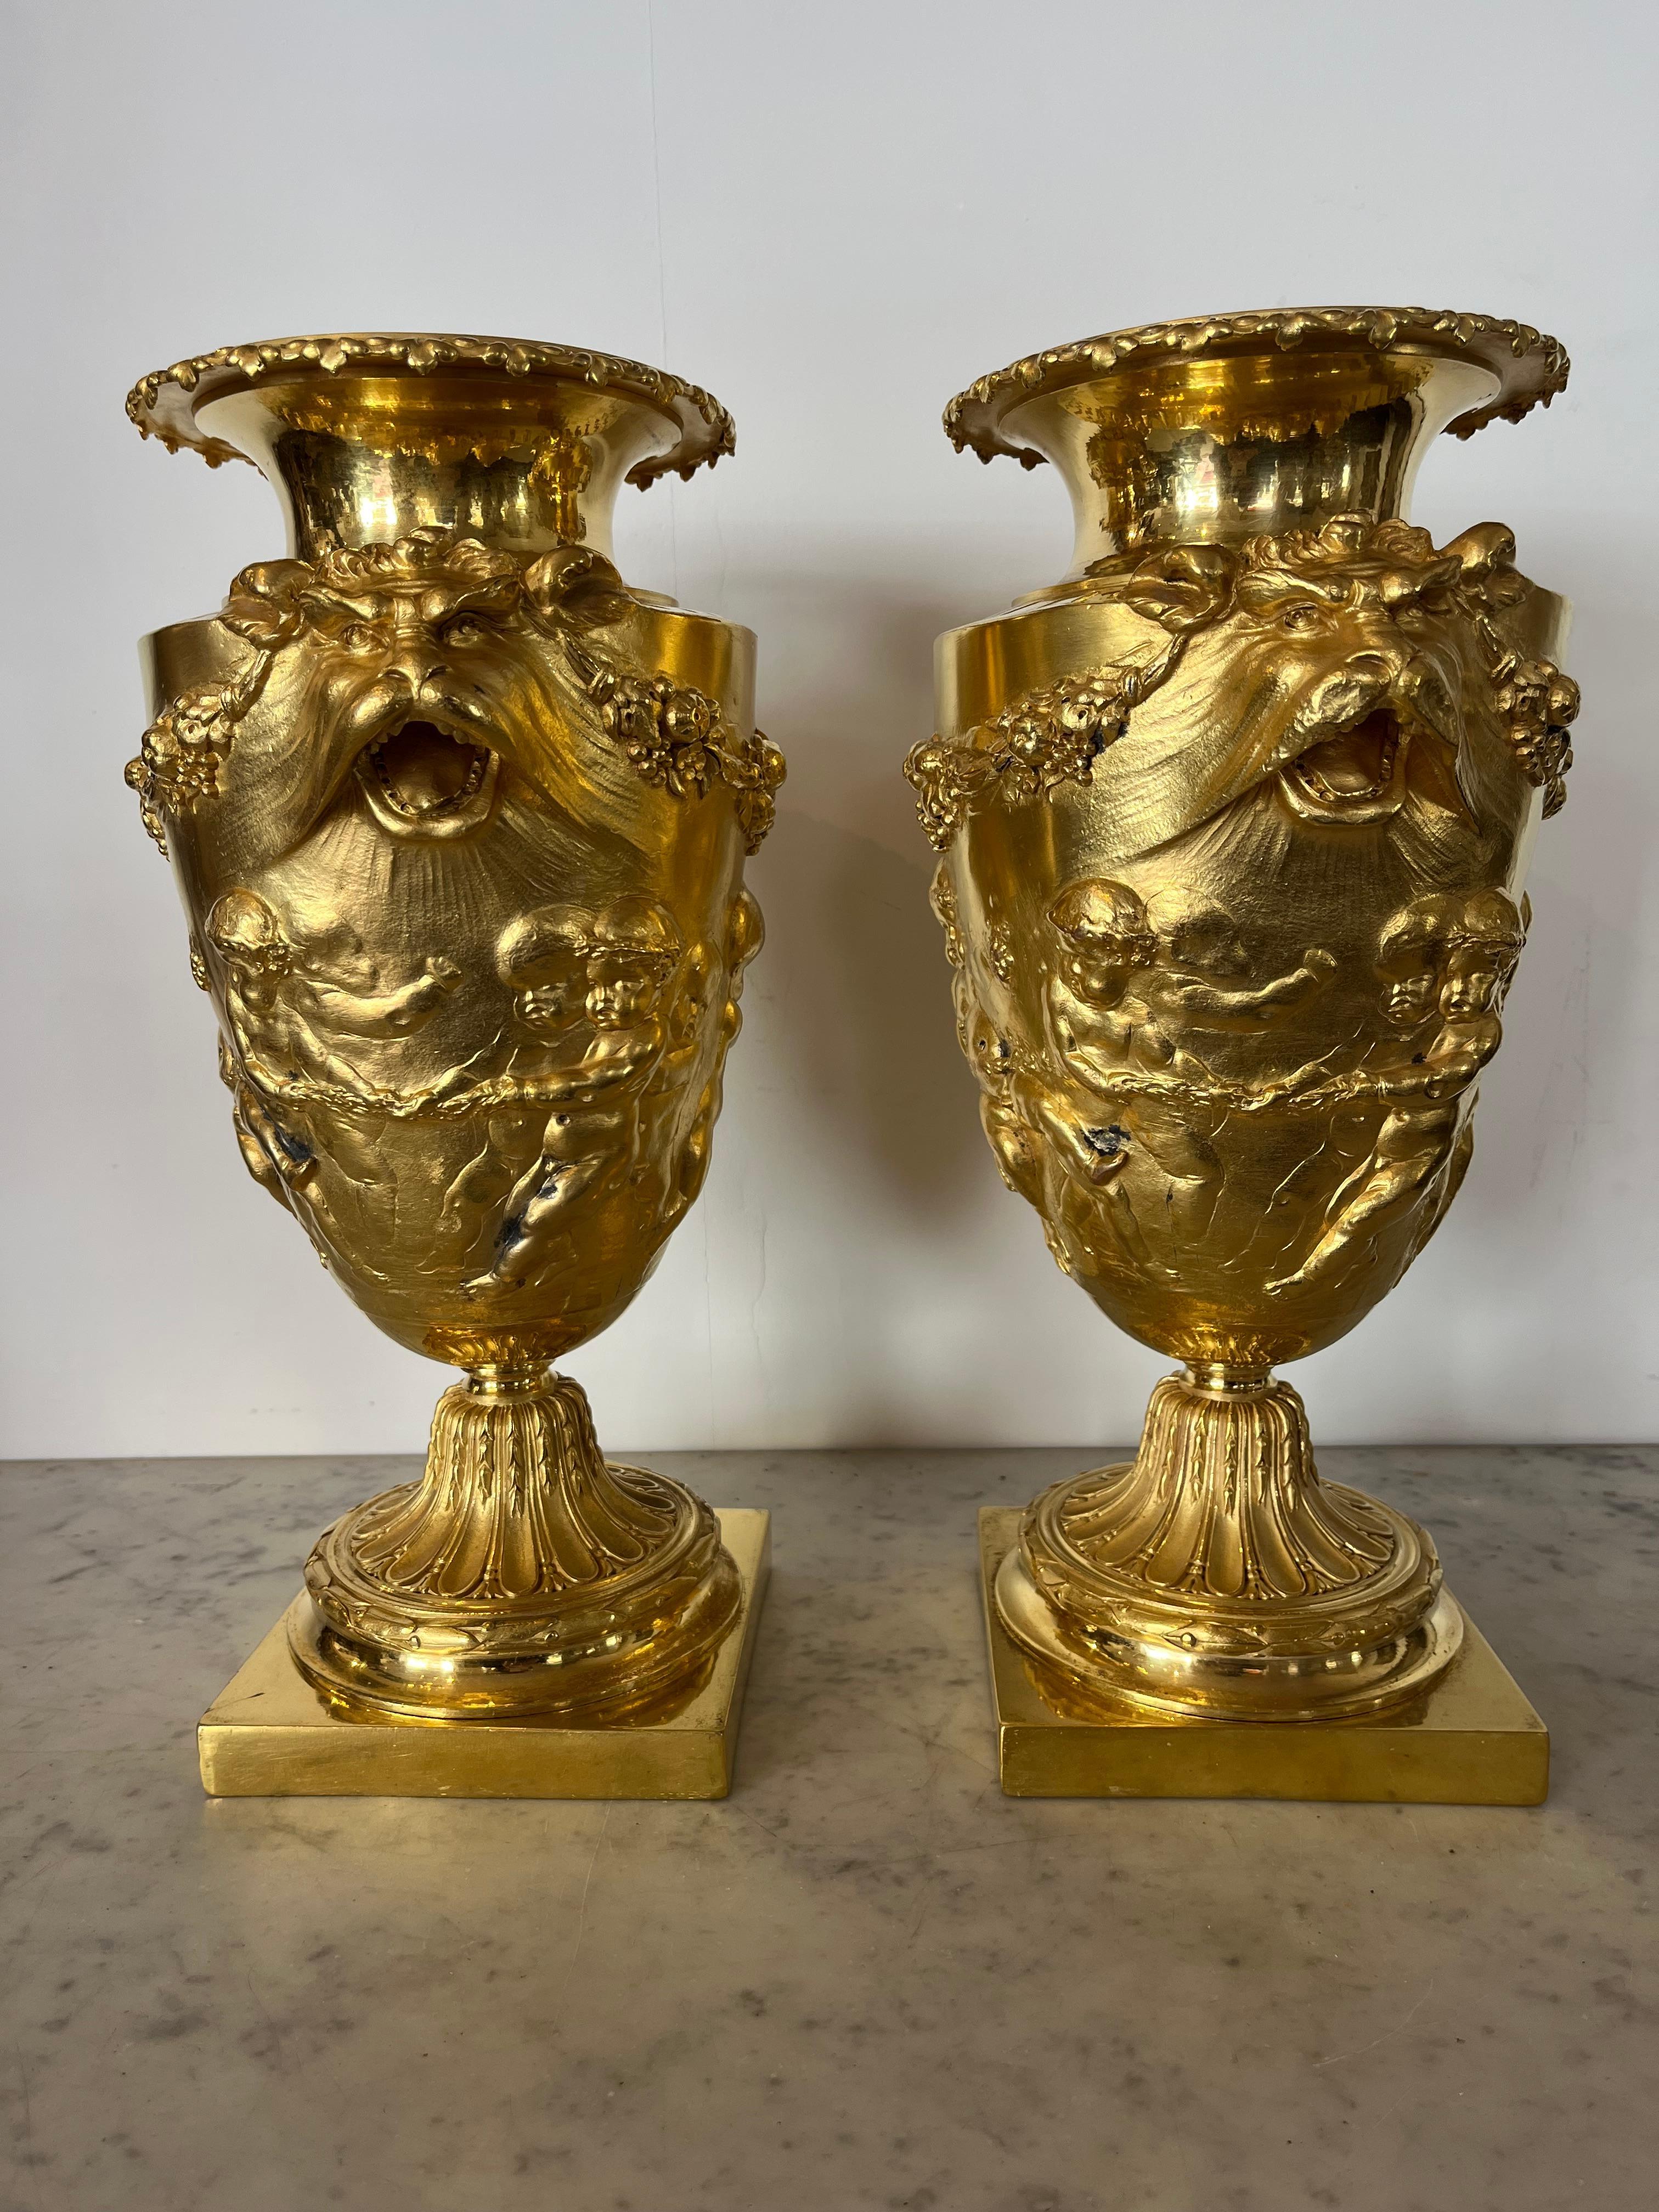 Cassolette aus vergoldeter und ziselierter Bronze. Dieses Paar Topfvasen oder Urnen im Louis-XVI-Stil besteht aus einem quadratischen, mit Achat polierten Bronzefuß. Dieser Sockel trägt einen kannelierten Sockel. Der Hals ist mit den gleichen Rillen